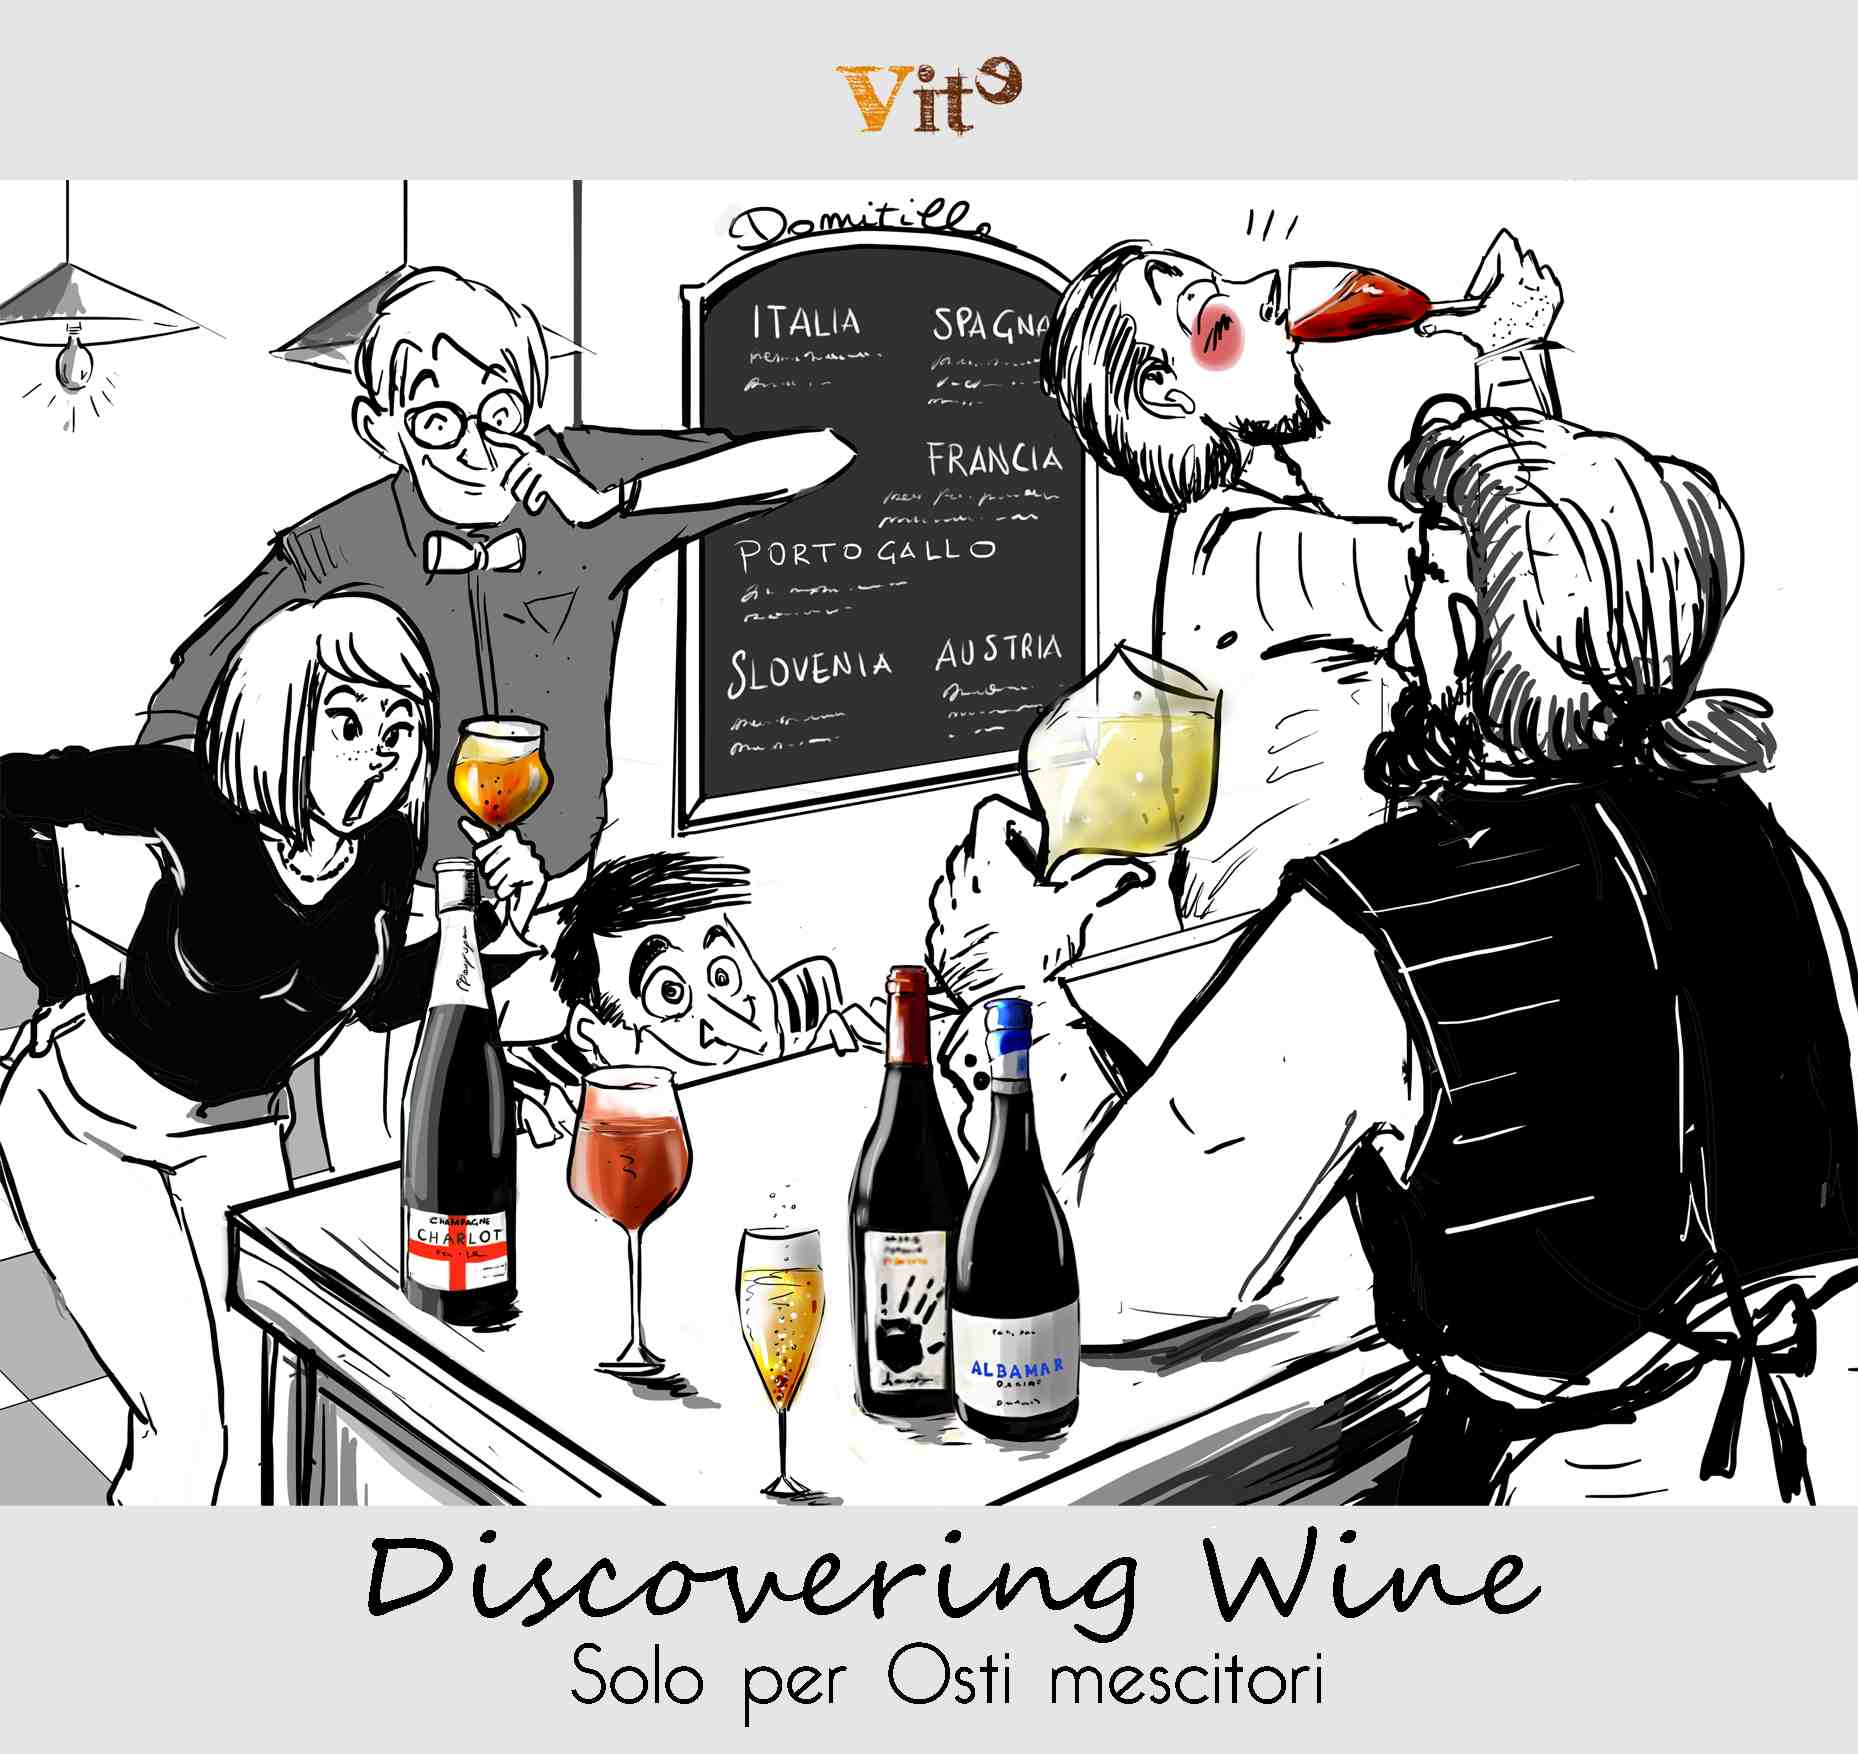 Discovering winePiccolo